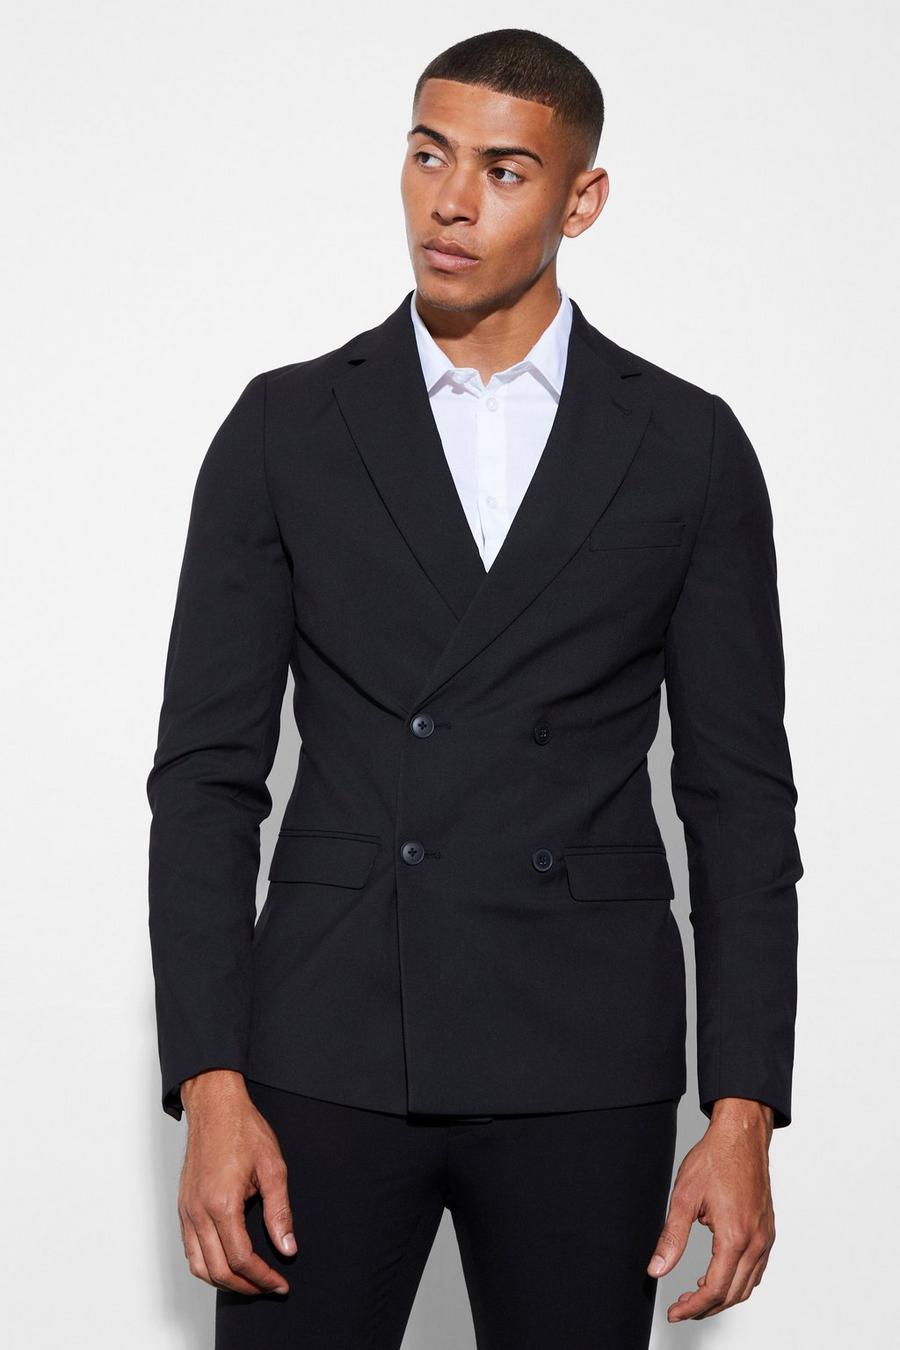 שחור nero ז'קט חליפה סופר סקיני עם דשים כפולים